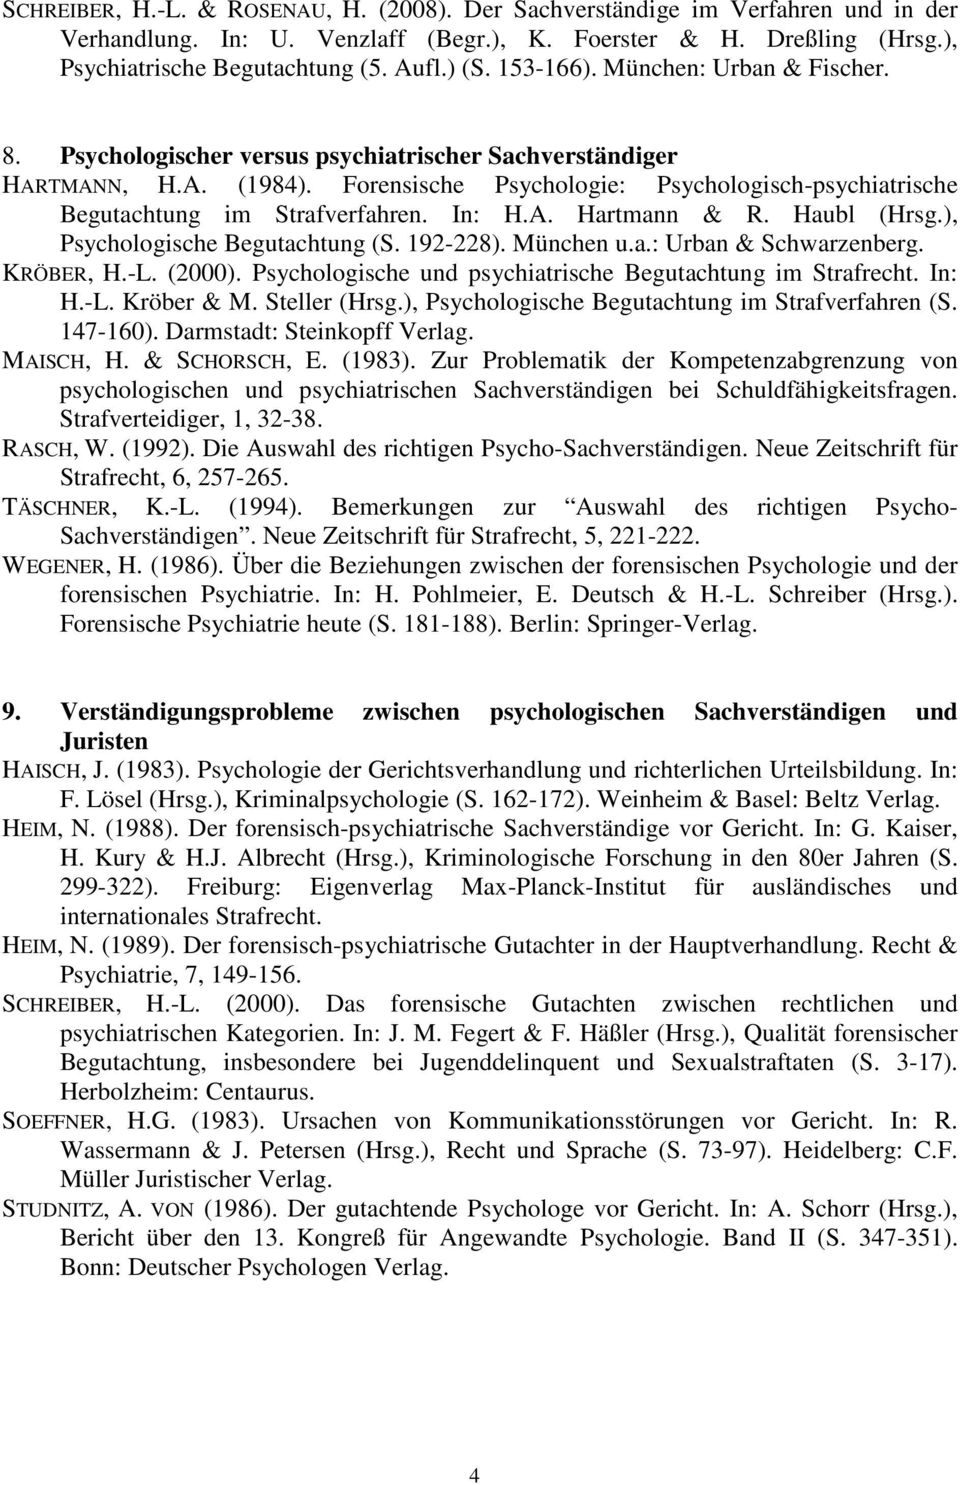 Forensische Psychologie: Psychologisch-psychiatrische Begutachtung im Strafverfahren. In: H.A. Hartmann & R. Haubl (Hrsg.), Psychologische Begutachtung (S. 192-228). München u.a.: Urban & Schwarzenberg.